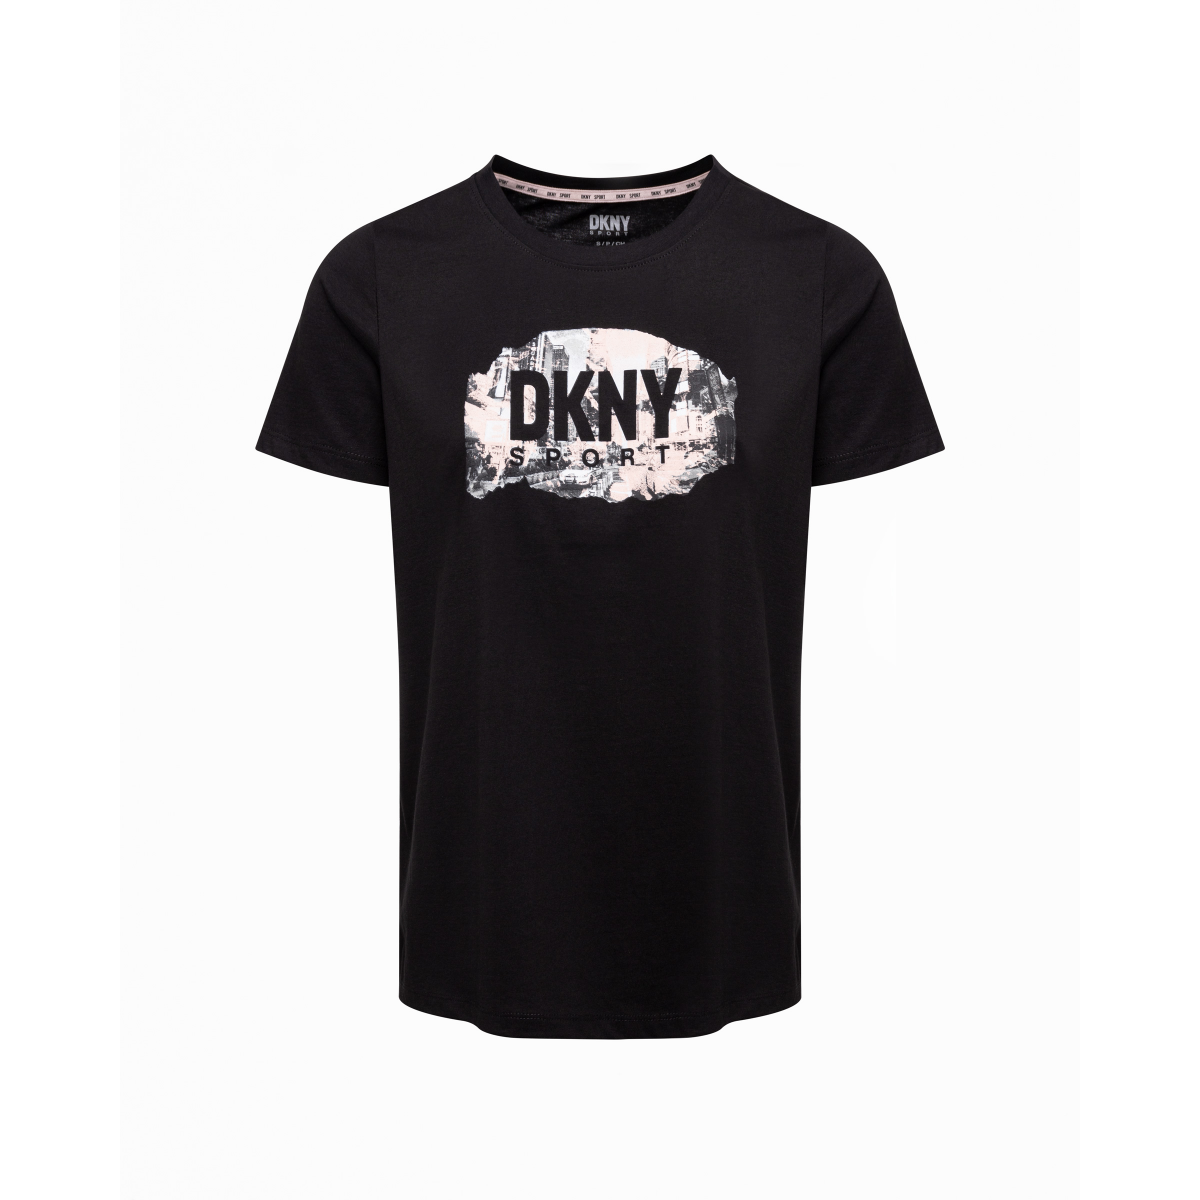 DKNY Sport DP2T9246 Black T-shirt - 302-2T9246-51